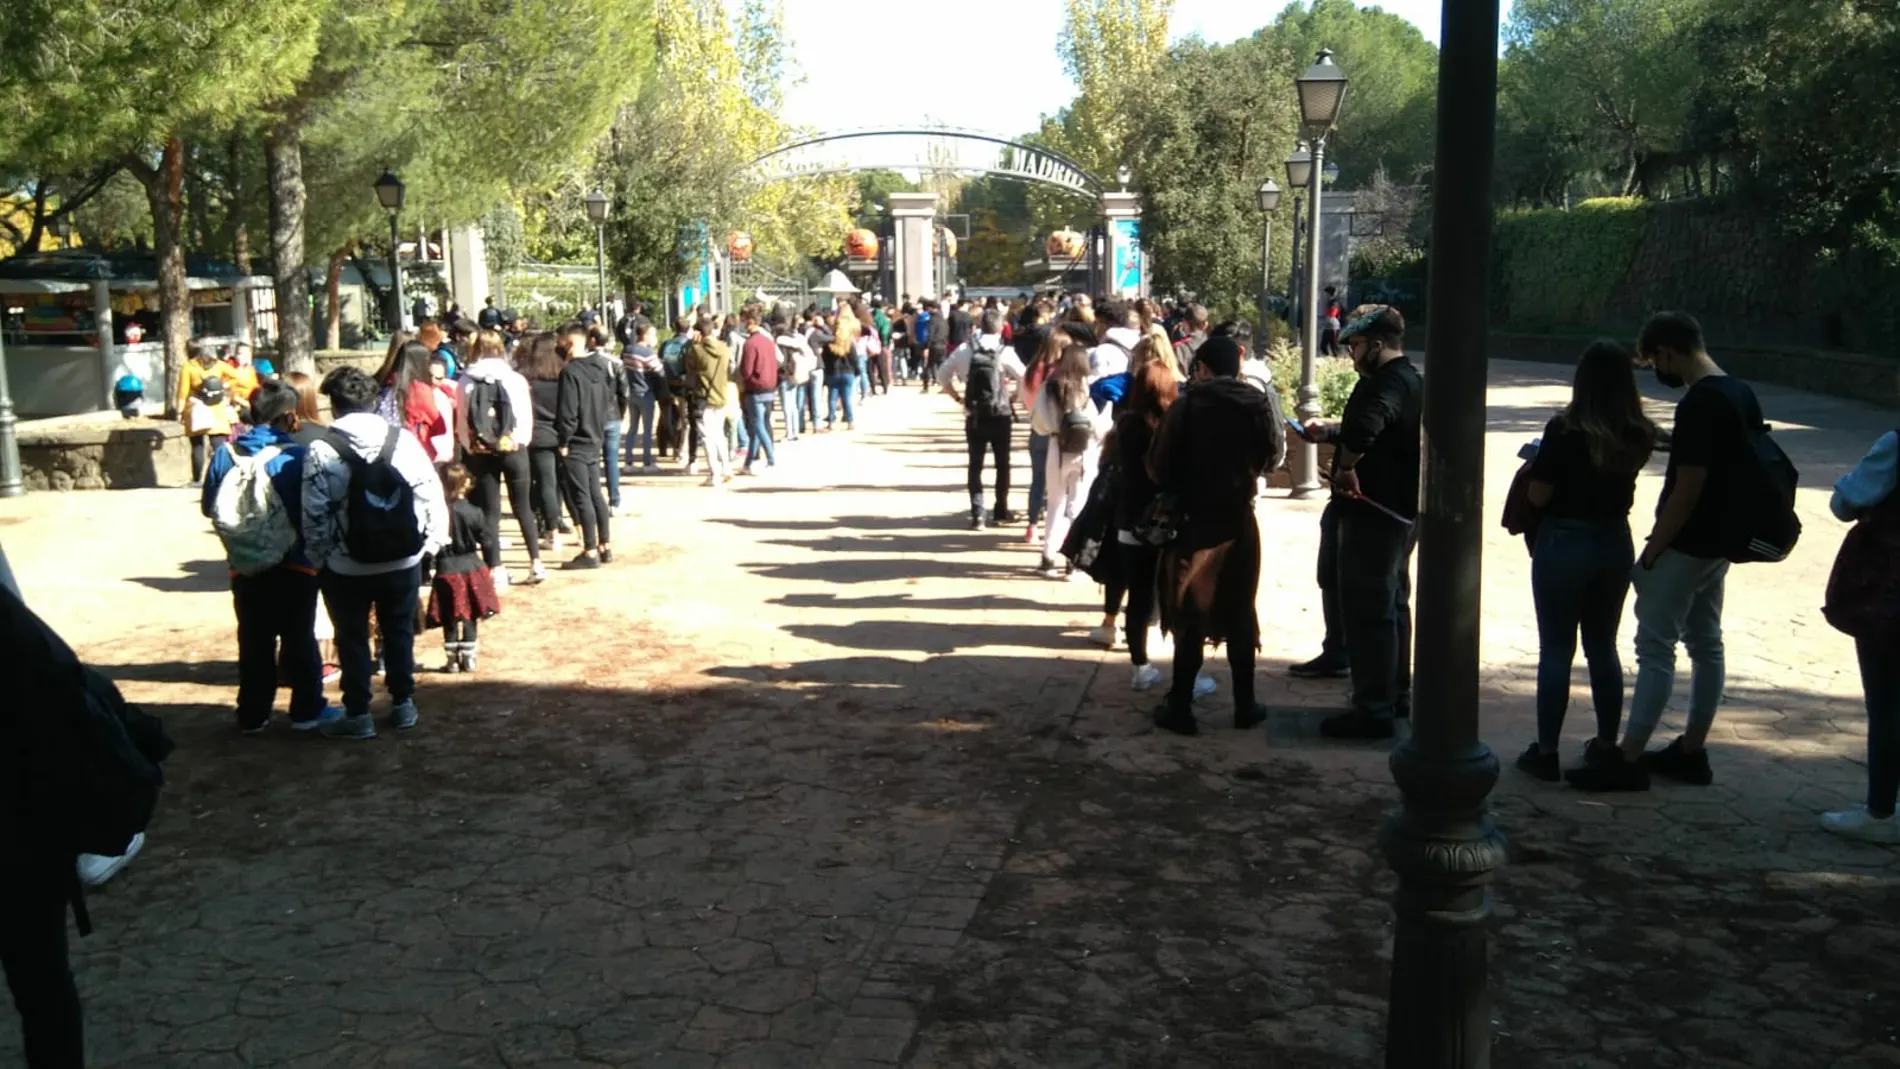 Largas colas en el Parque de Atracciones de Madrid sin guardar distancias